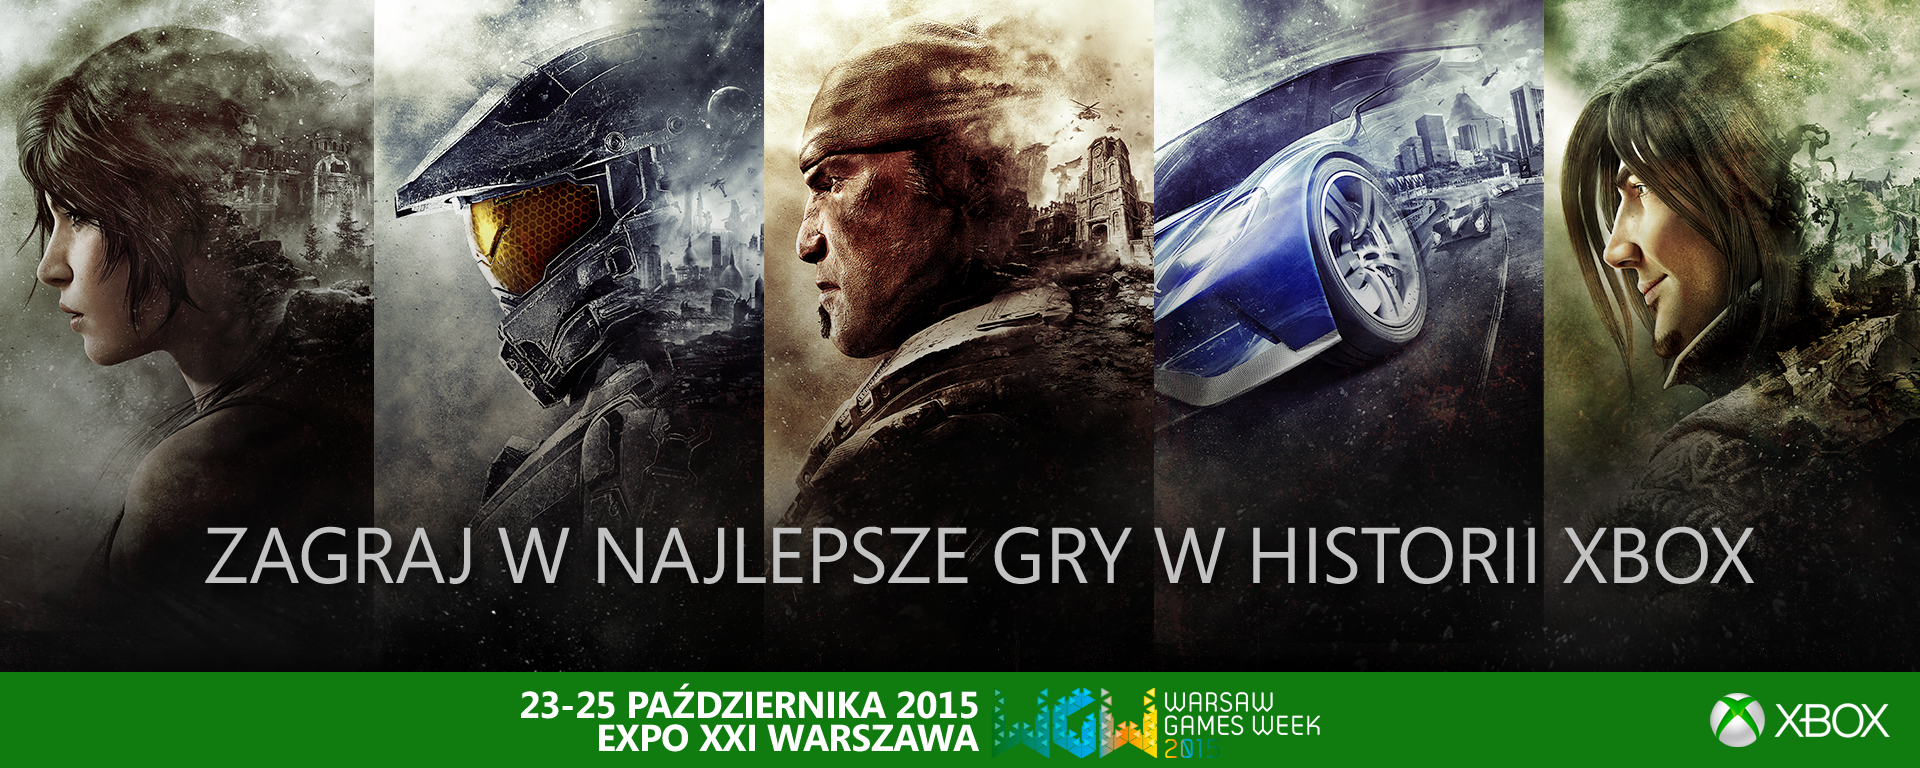 Microsoft szykuje na Warsaw Games Week najlepsze gry w historii konsoli Xbox